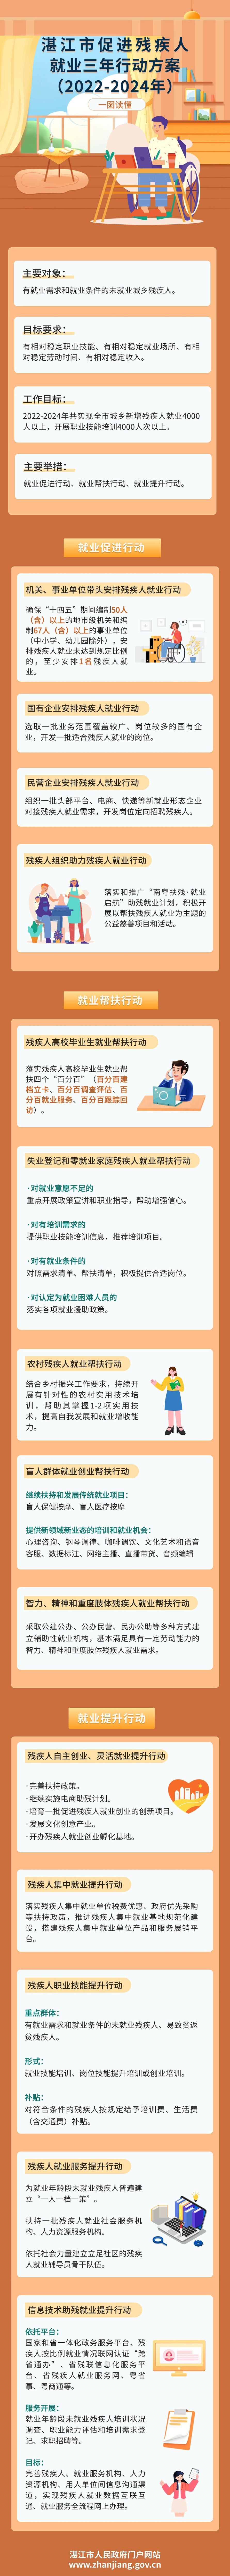 湛江市促进残疾人就业三年行动方案.jpg